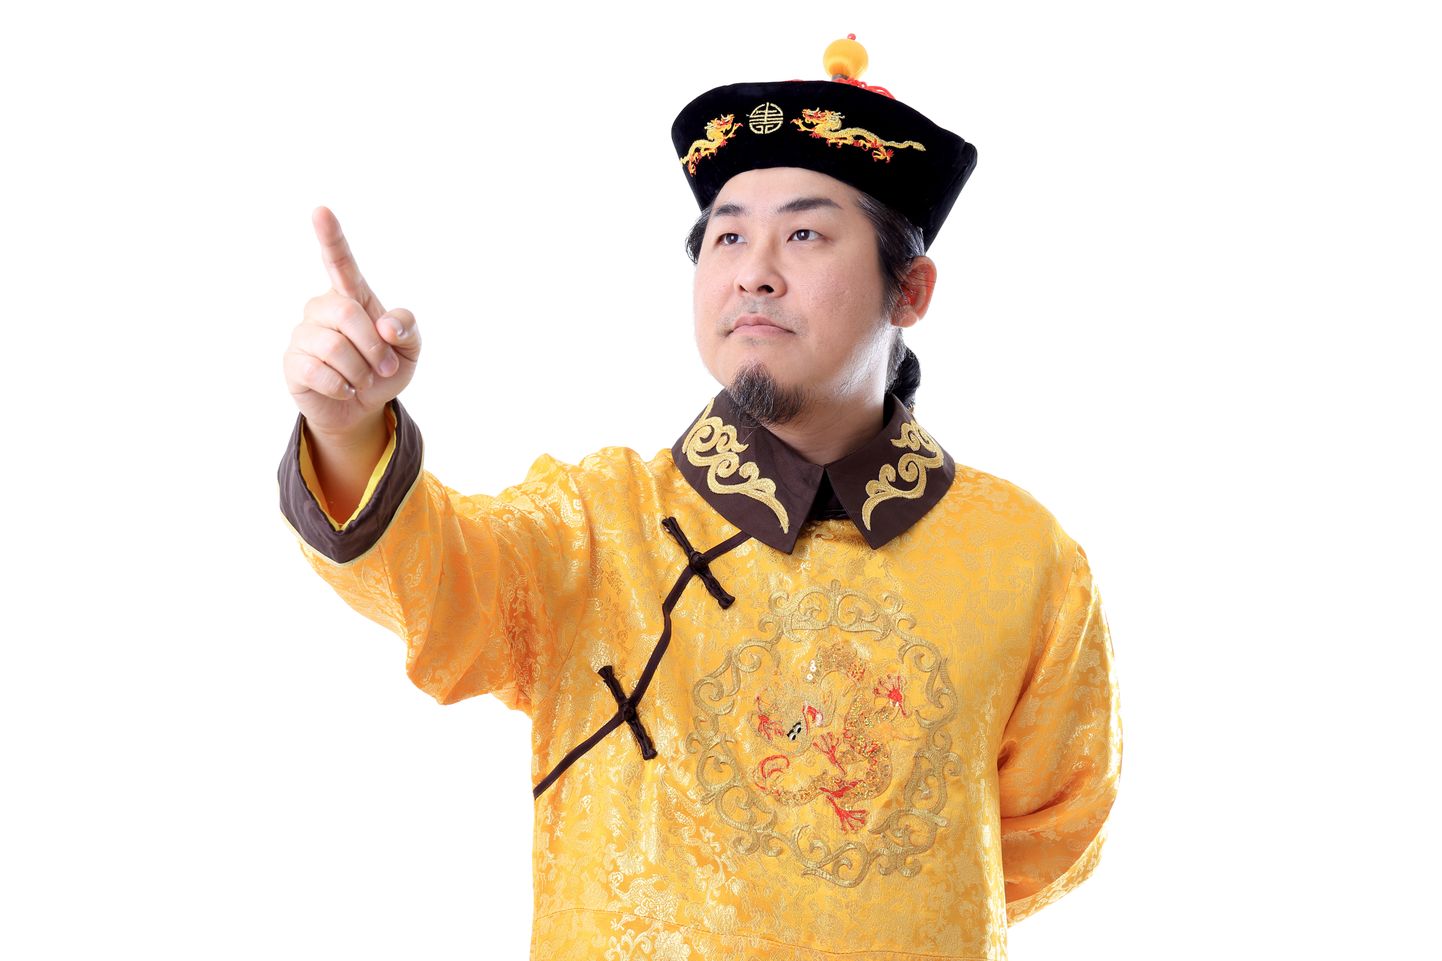 Vana-Hiina keisriks kehastunu.